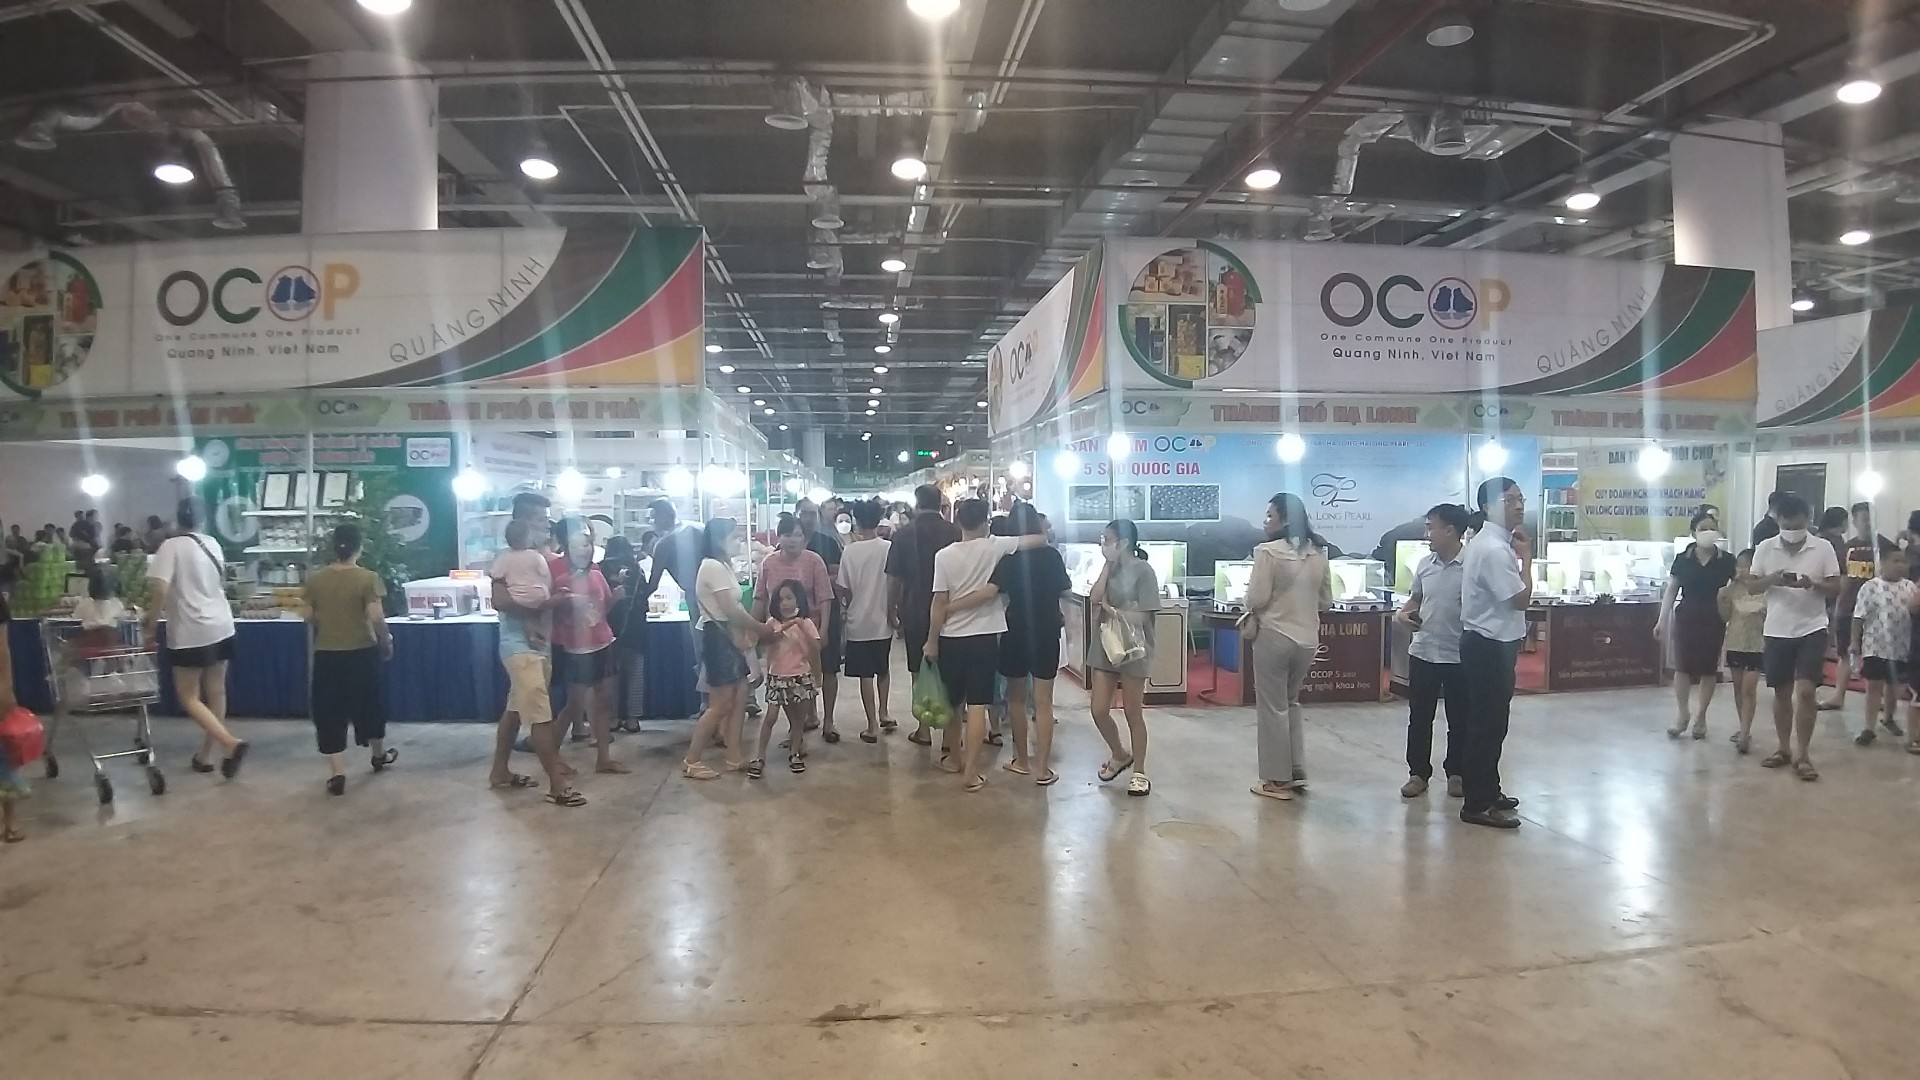 Khai mạc hội chợ OCOP Khu vực phía Bắc - Quảng Ninh 2022